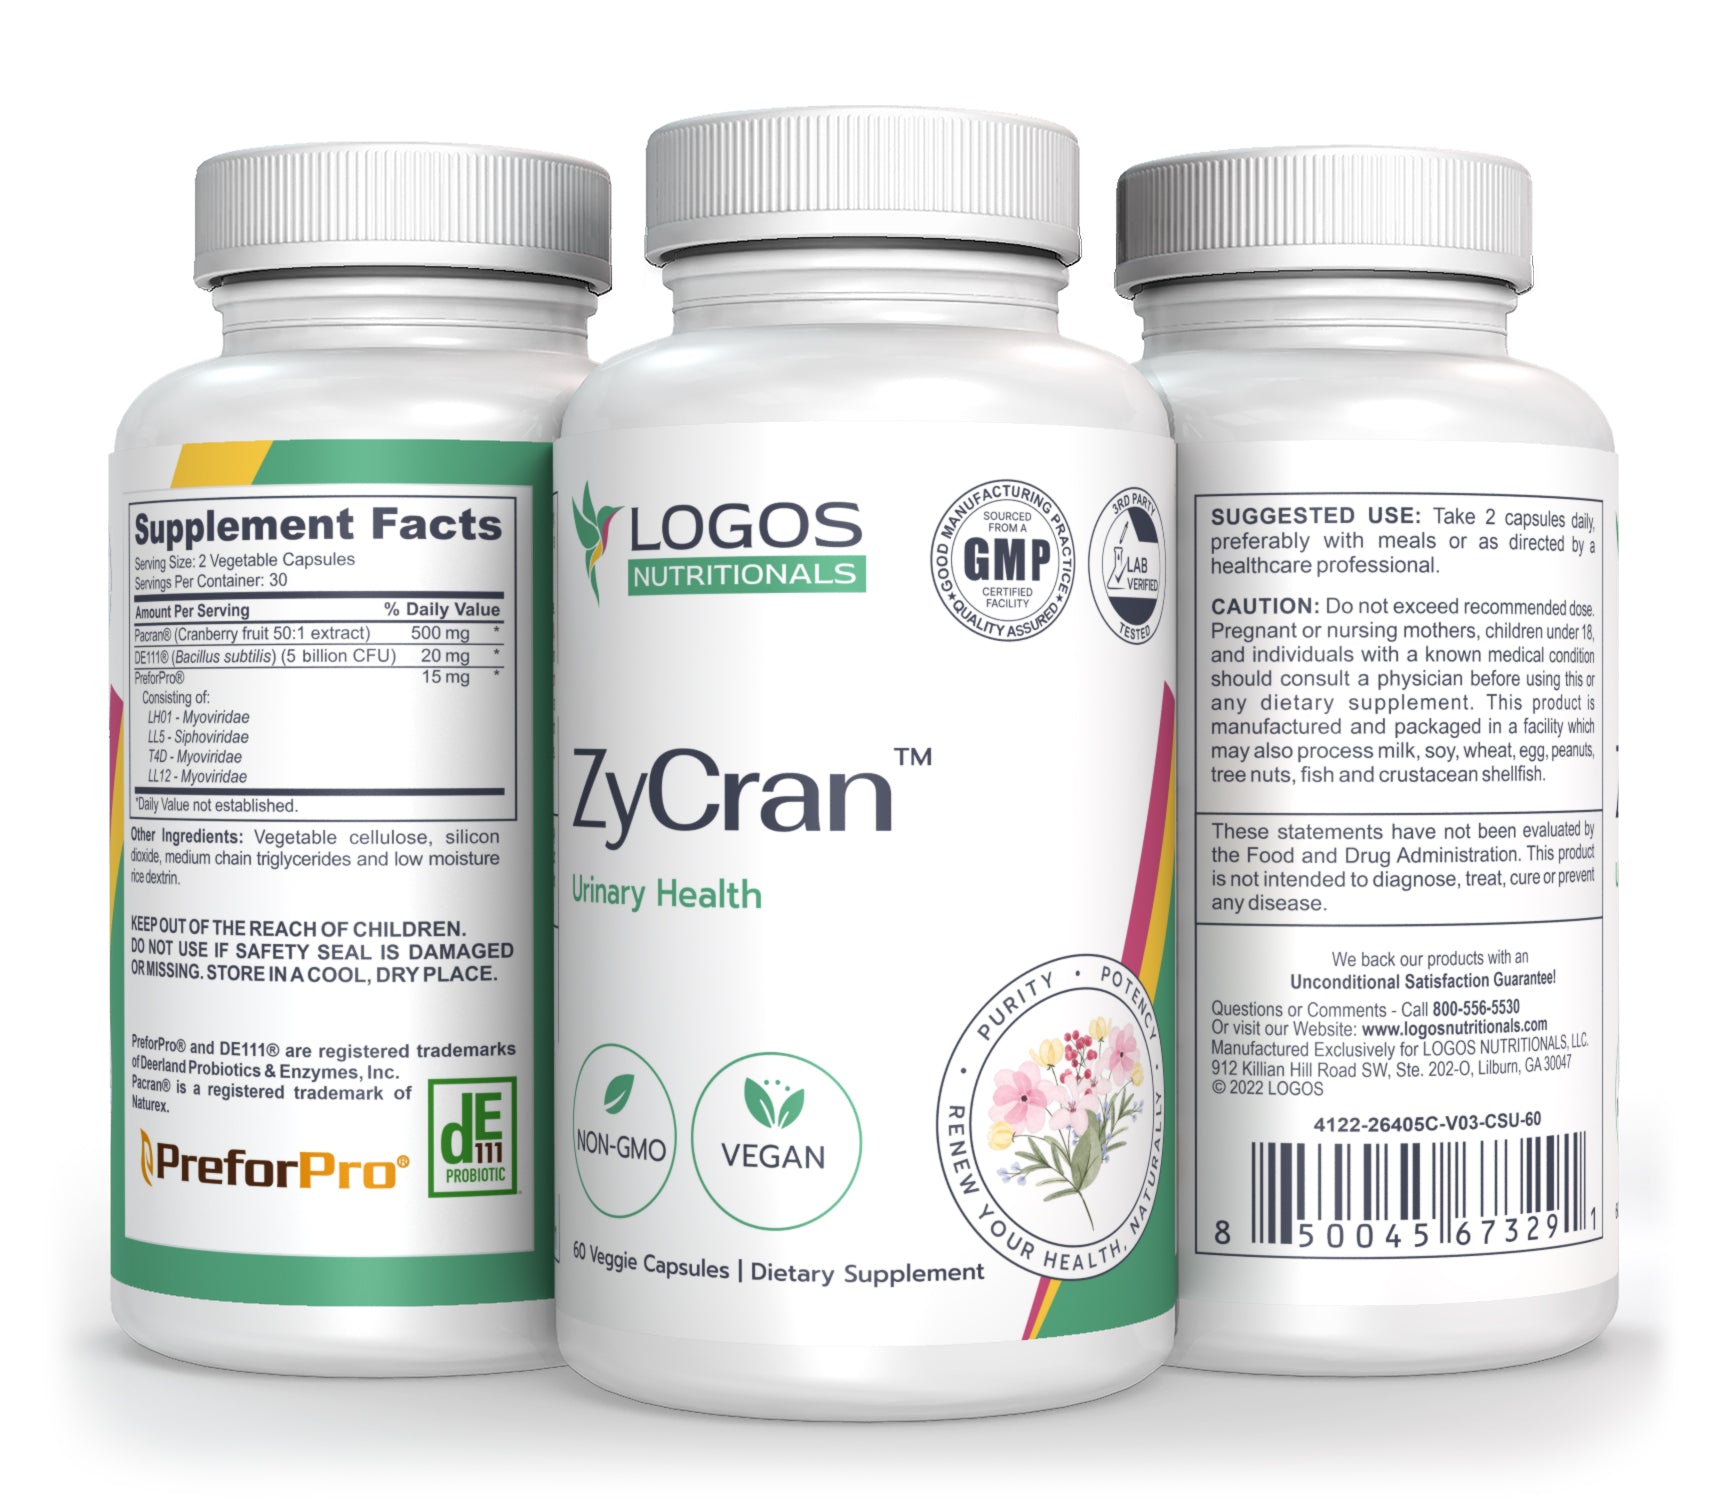 Logos Nutritionals_ZyCran